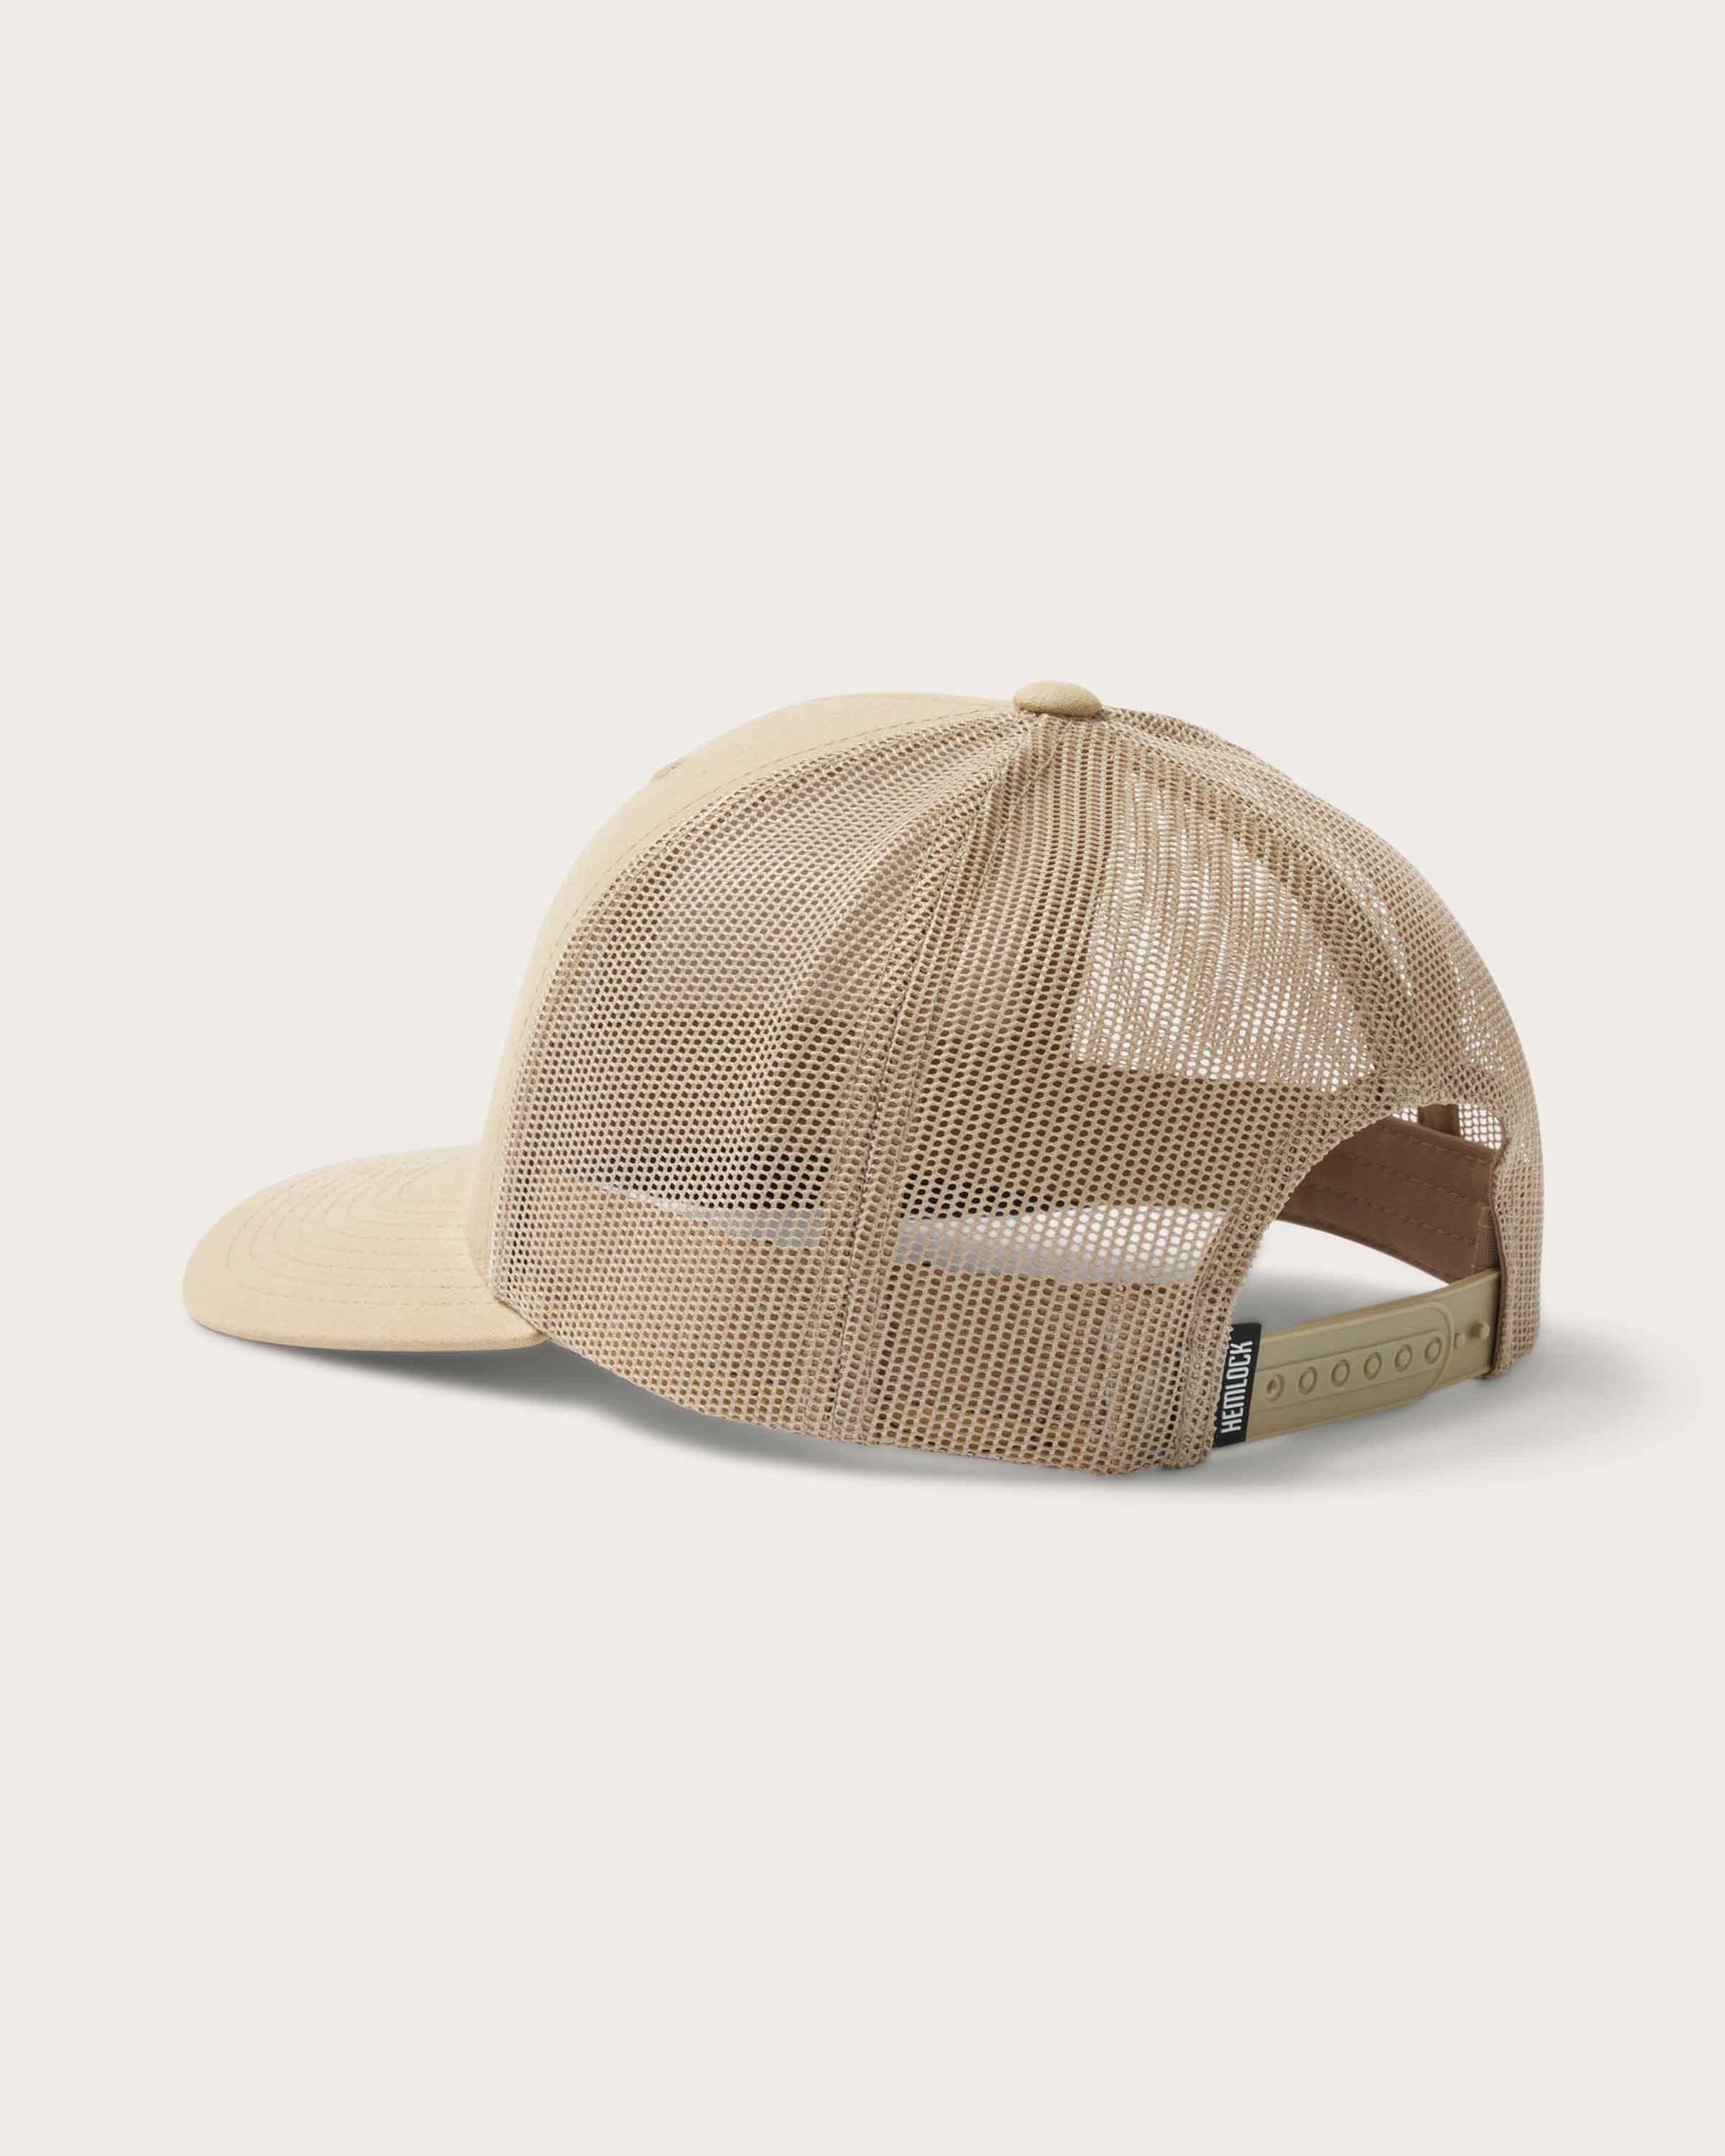 Emerson Trucker Hat in Khaki - undefined - Hemlock Hat Co. Ball Caps